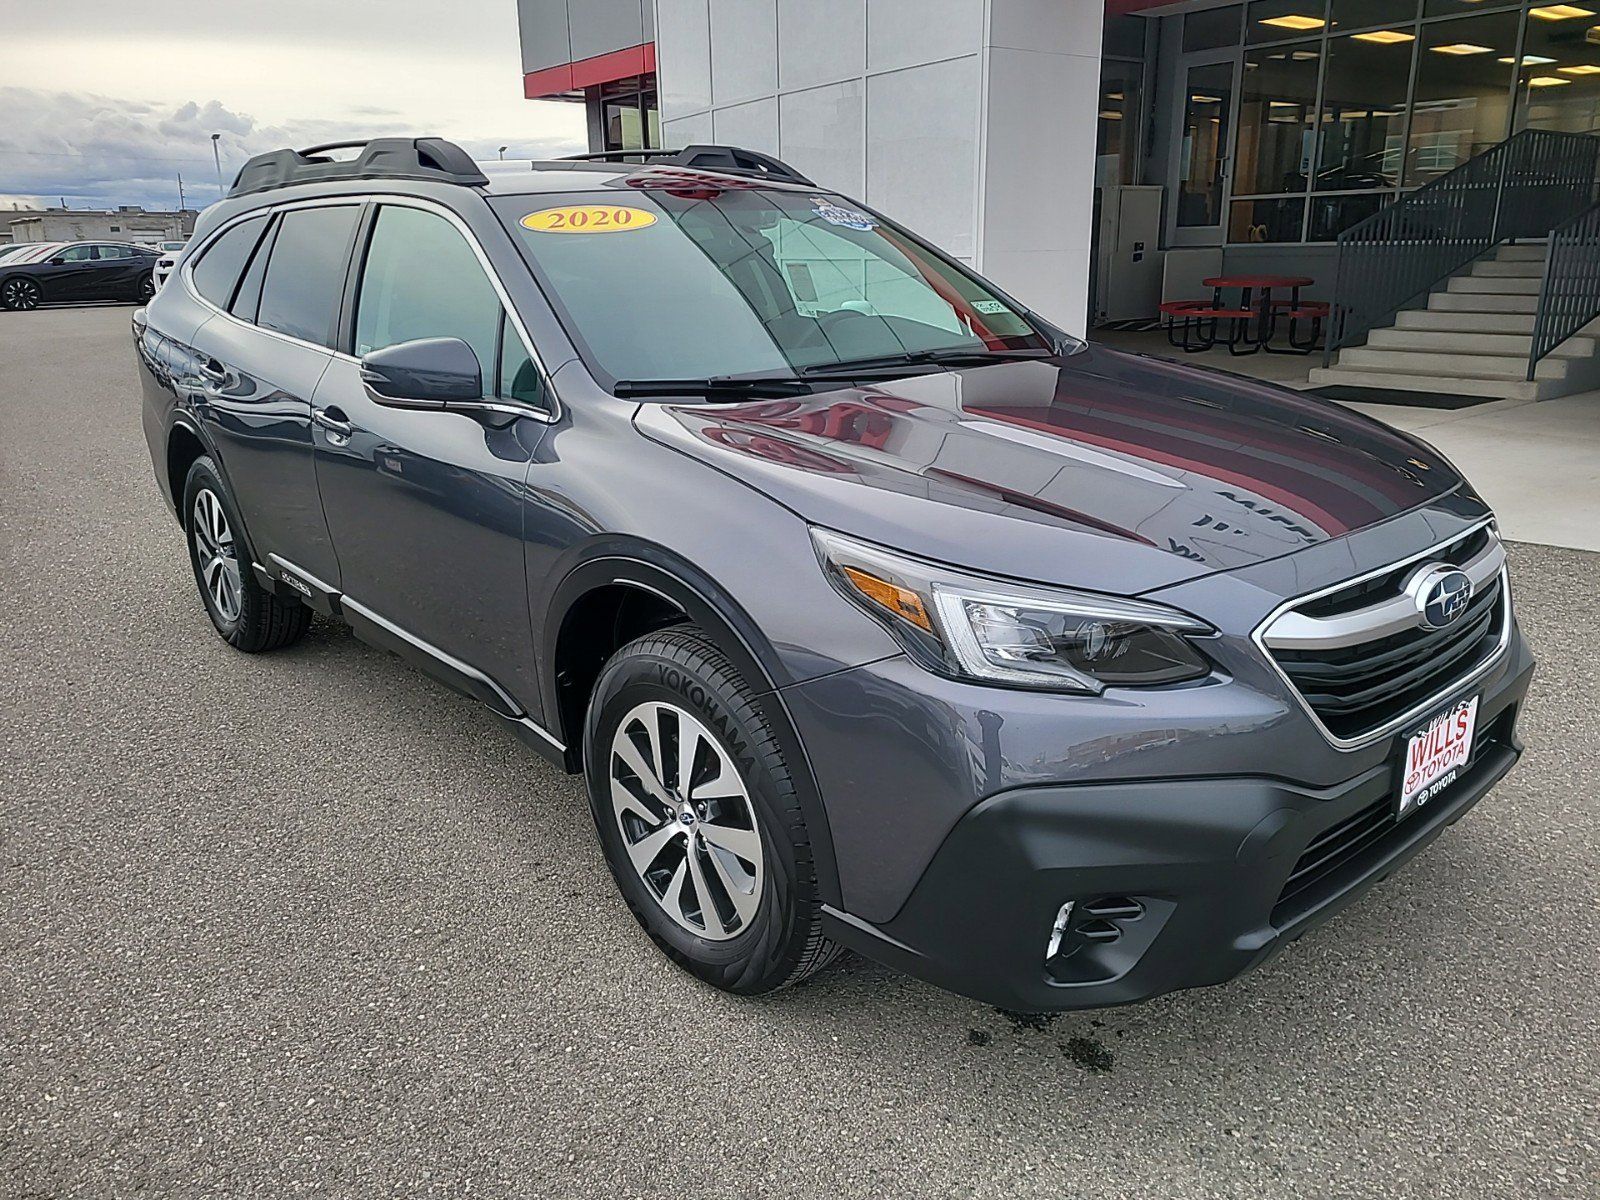 2020 - Subaru - Outback - $26,997